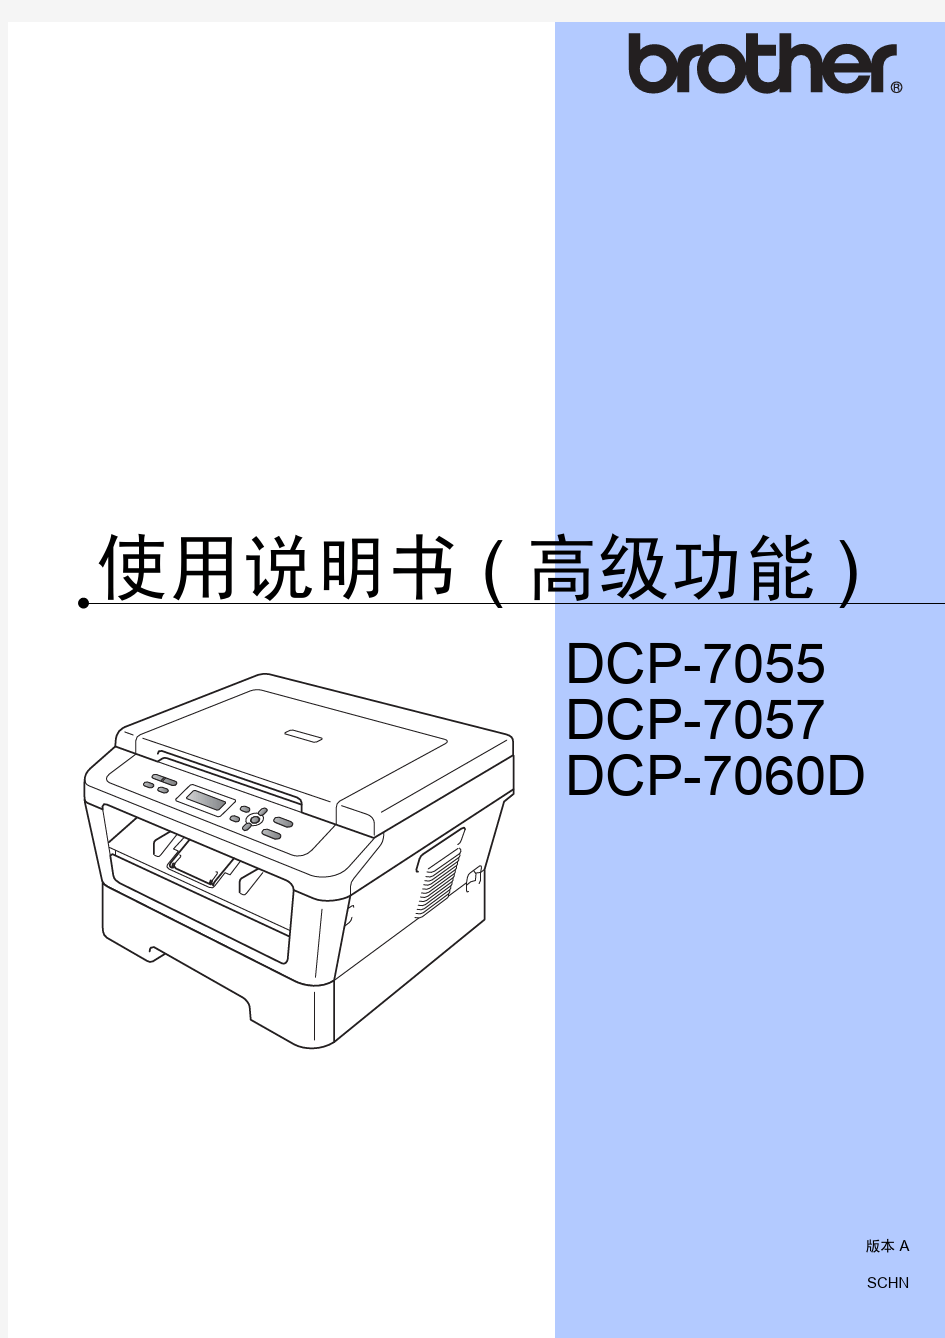 兄弟DCP-7060d使用说明书(高级功能)